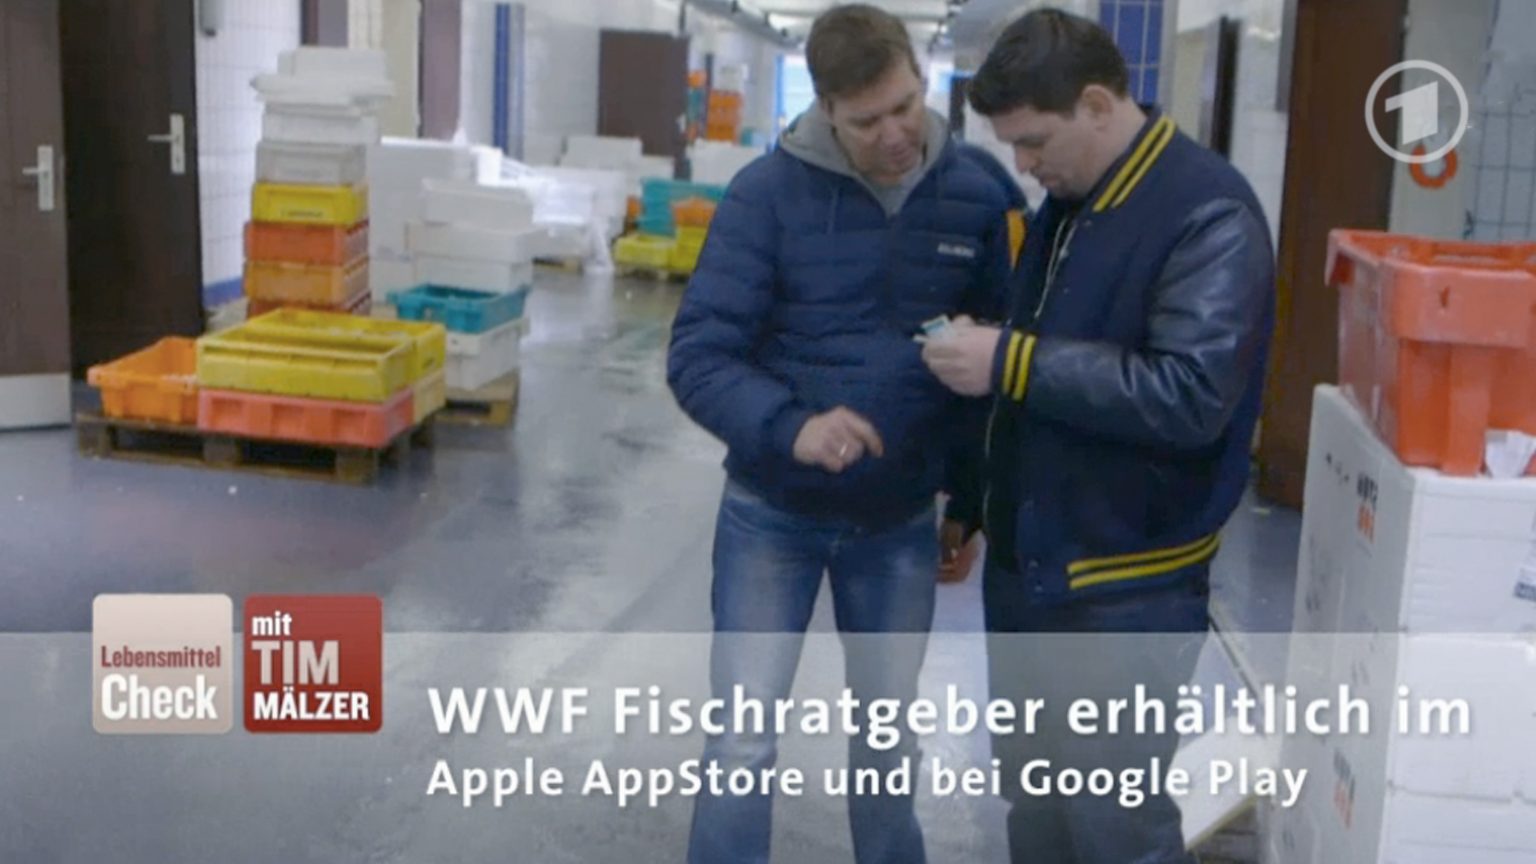 Tim Mälzer mit WWF Fischratgeber App im Lebensmittel-Check